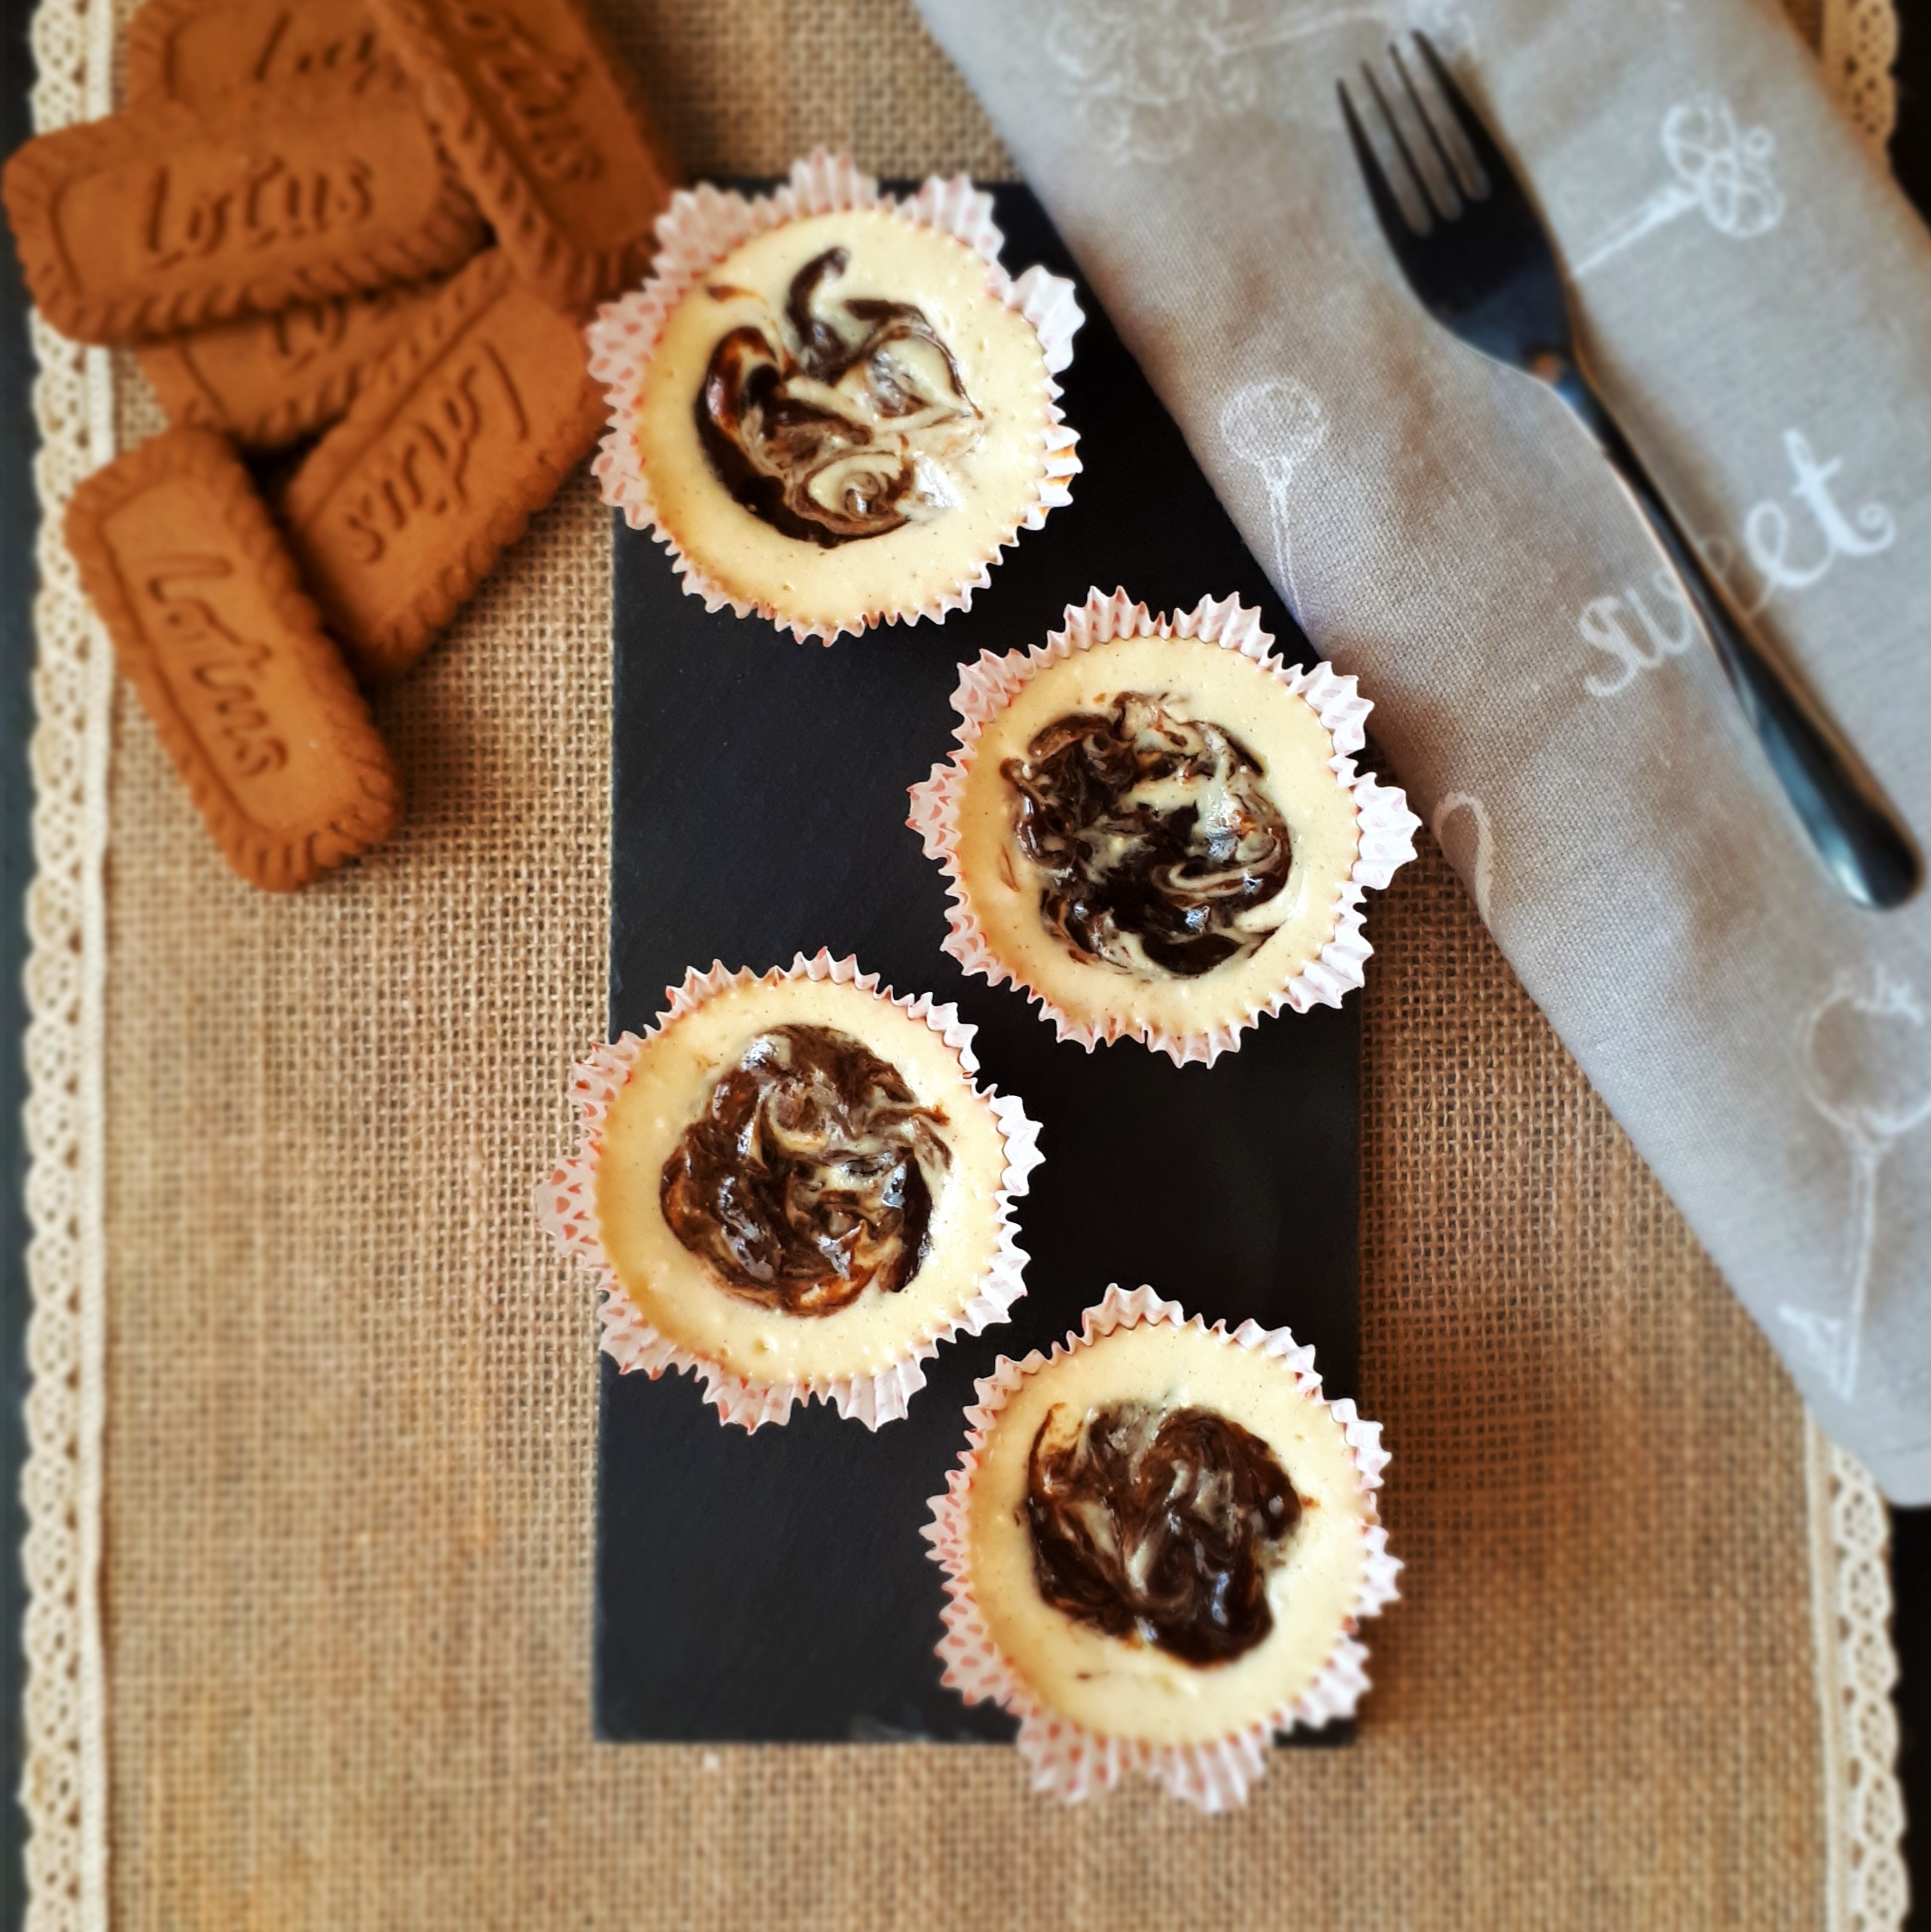 Štyri mini cheesecake muffiny so slivkovým lekvárom v bielych papierovým košíčkoch na čiernej kamennej doske plstenné prestieranie šedá kuchynská utierka s dezertovu lyžičkou vysypané Lotus sušienky